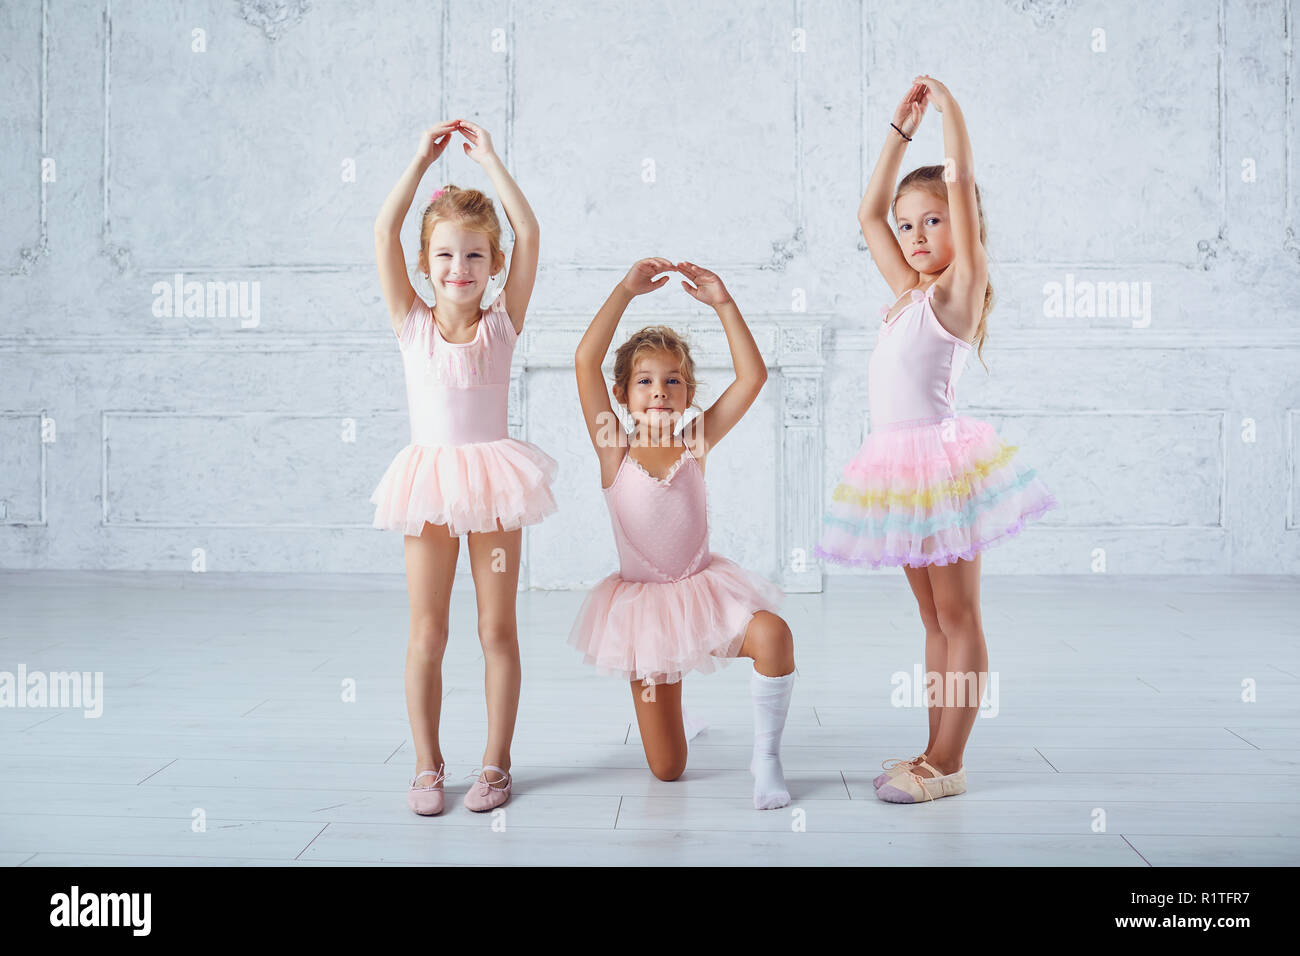 Les enfants in ballerina costumes sont engagés dans la danse. Banque D'Images